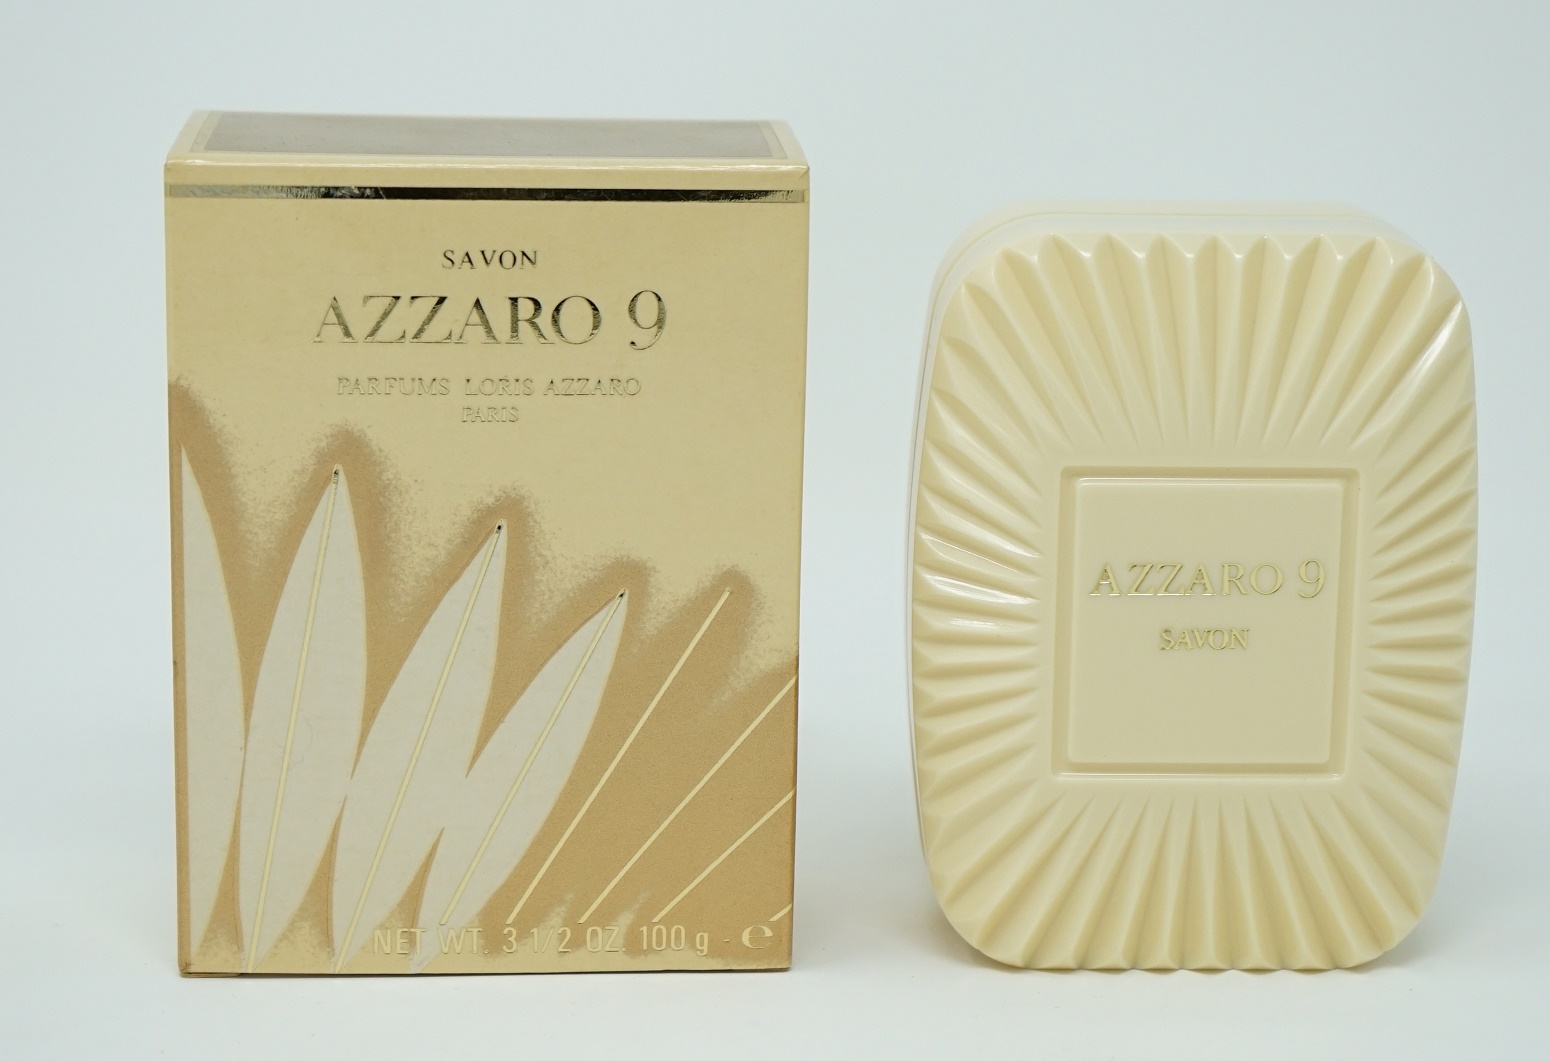 Azzaro 9 Savon Body Soap Seife 100g